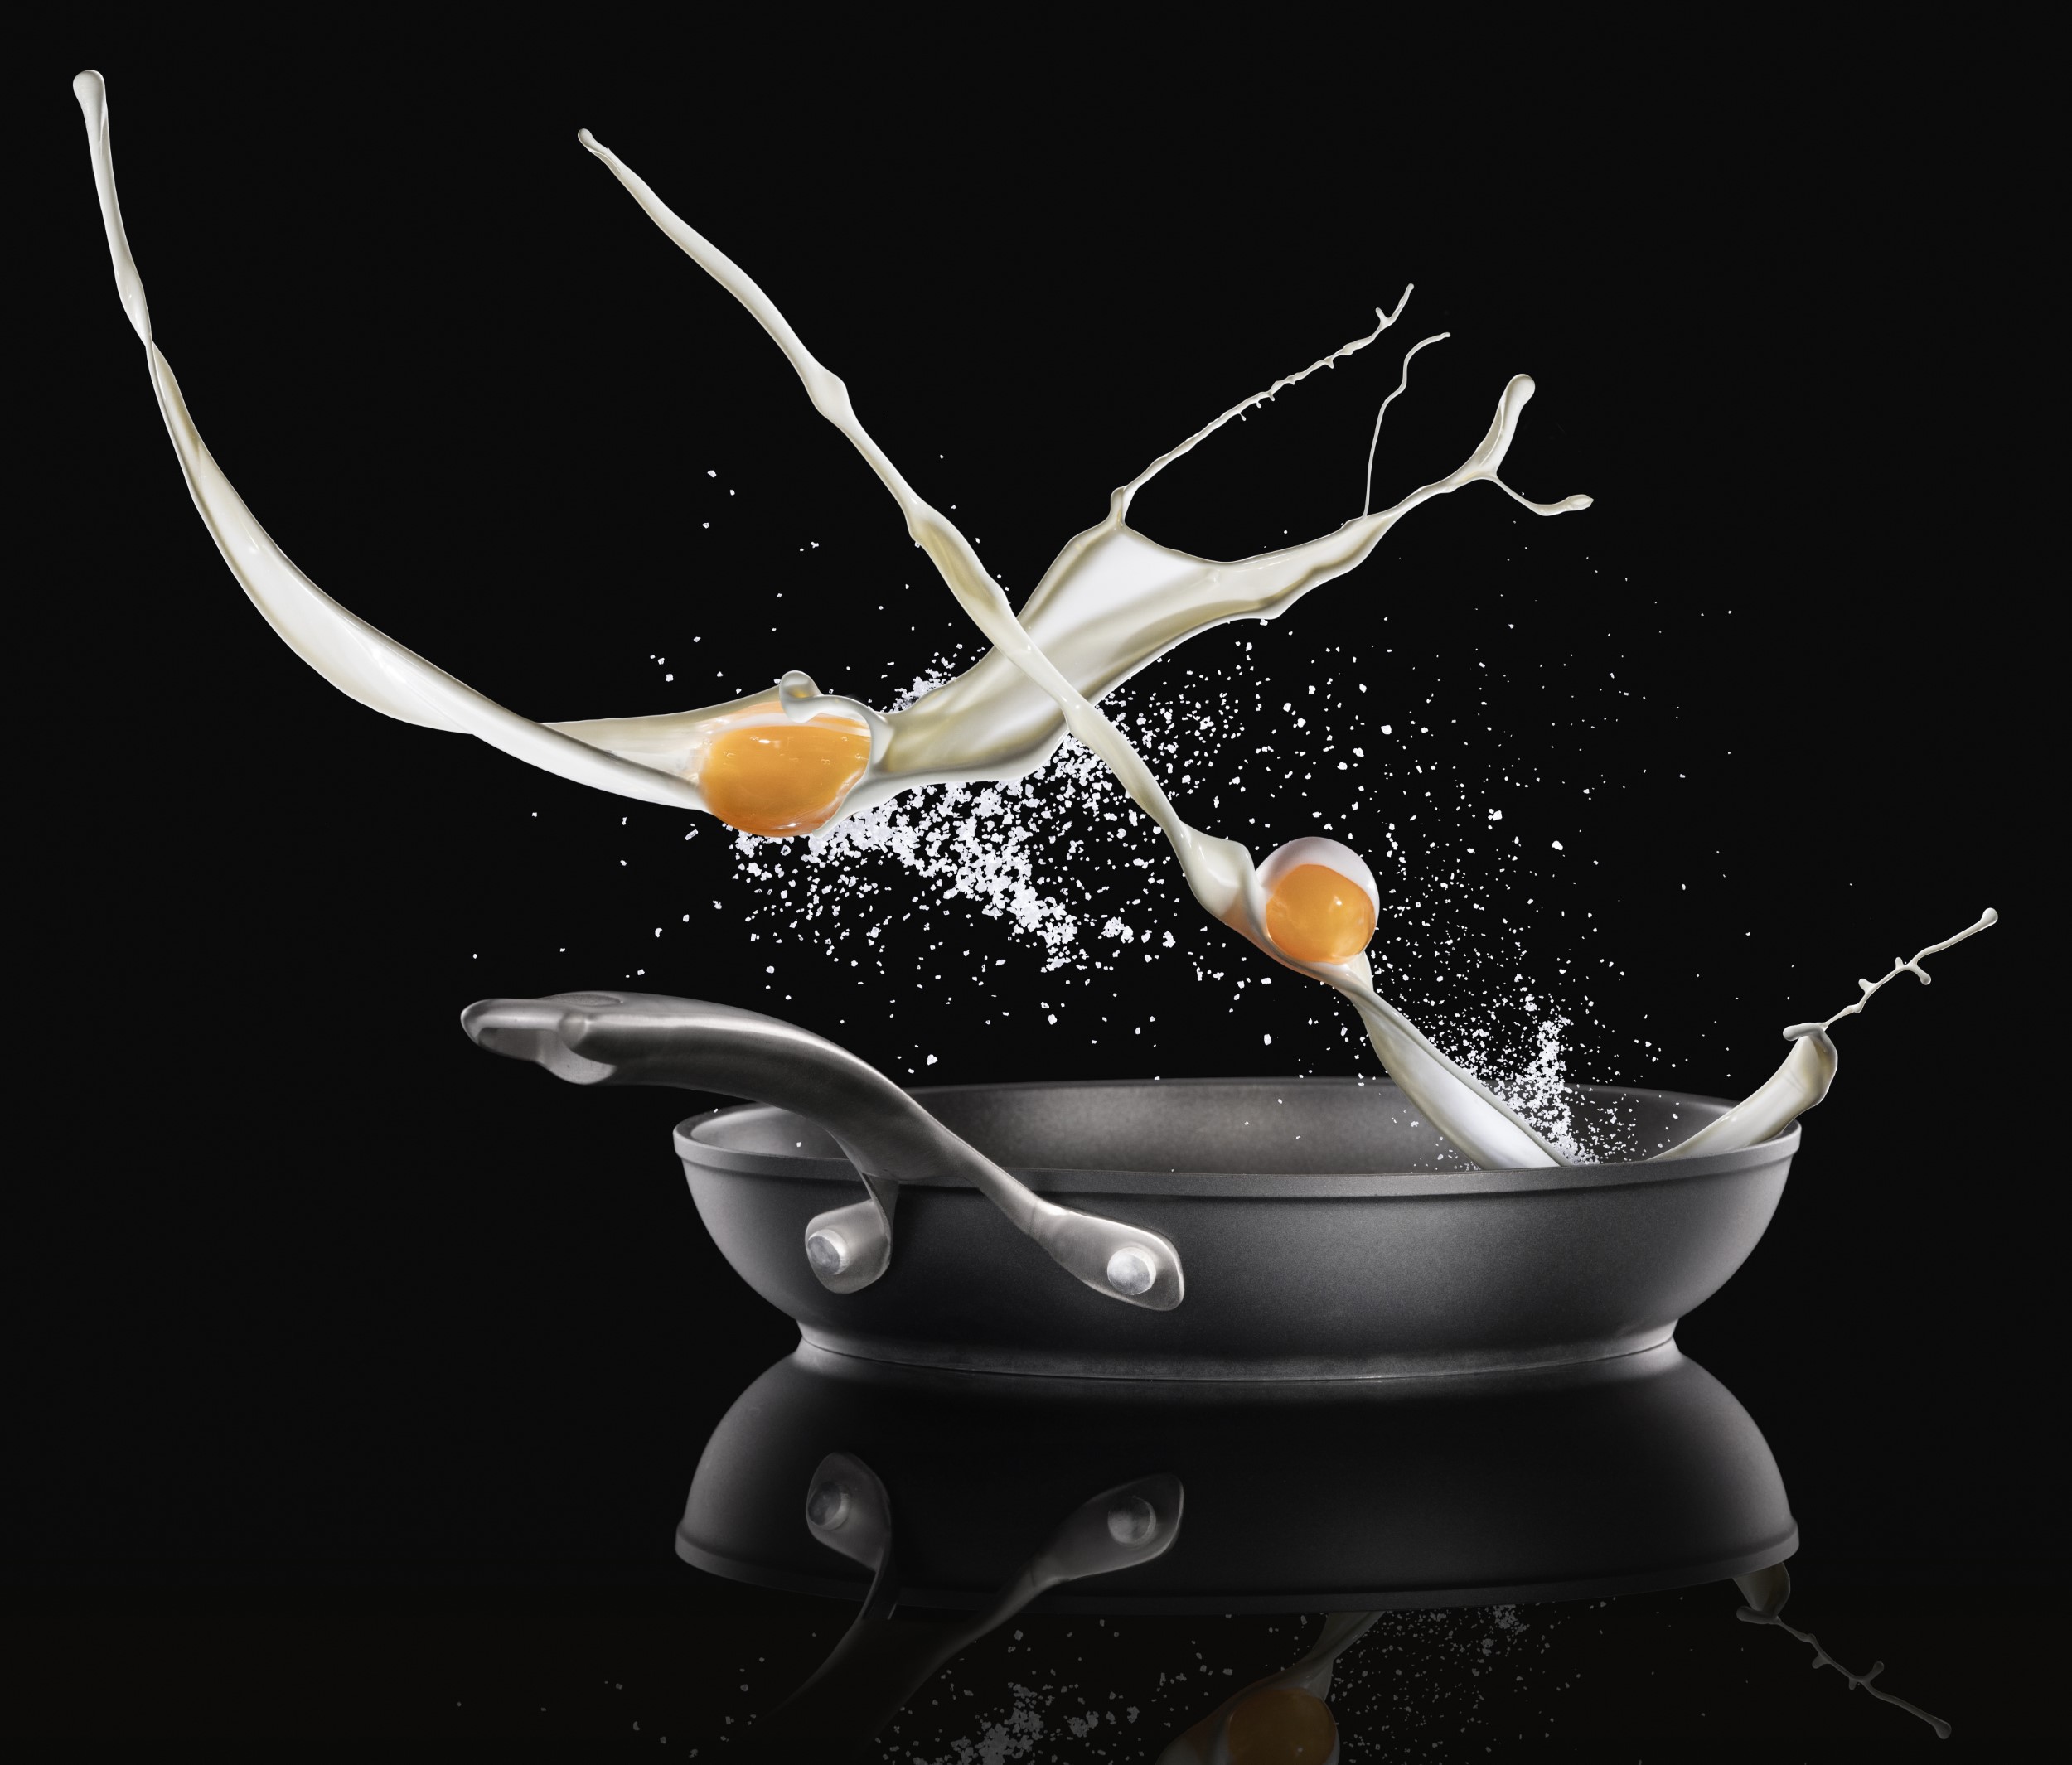 צילום מודעות ושילוט של פודאפיל מחברת שחורה עם ידית כסופה לתוכה עפות 2 חלמוני ביצה עם חלב וקמח